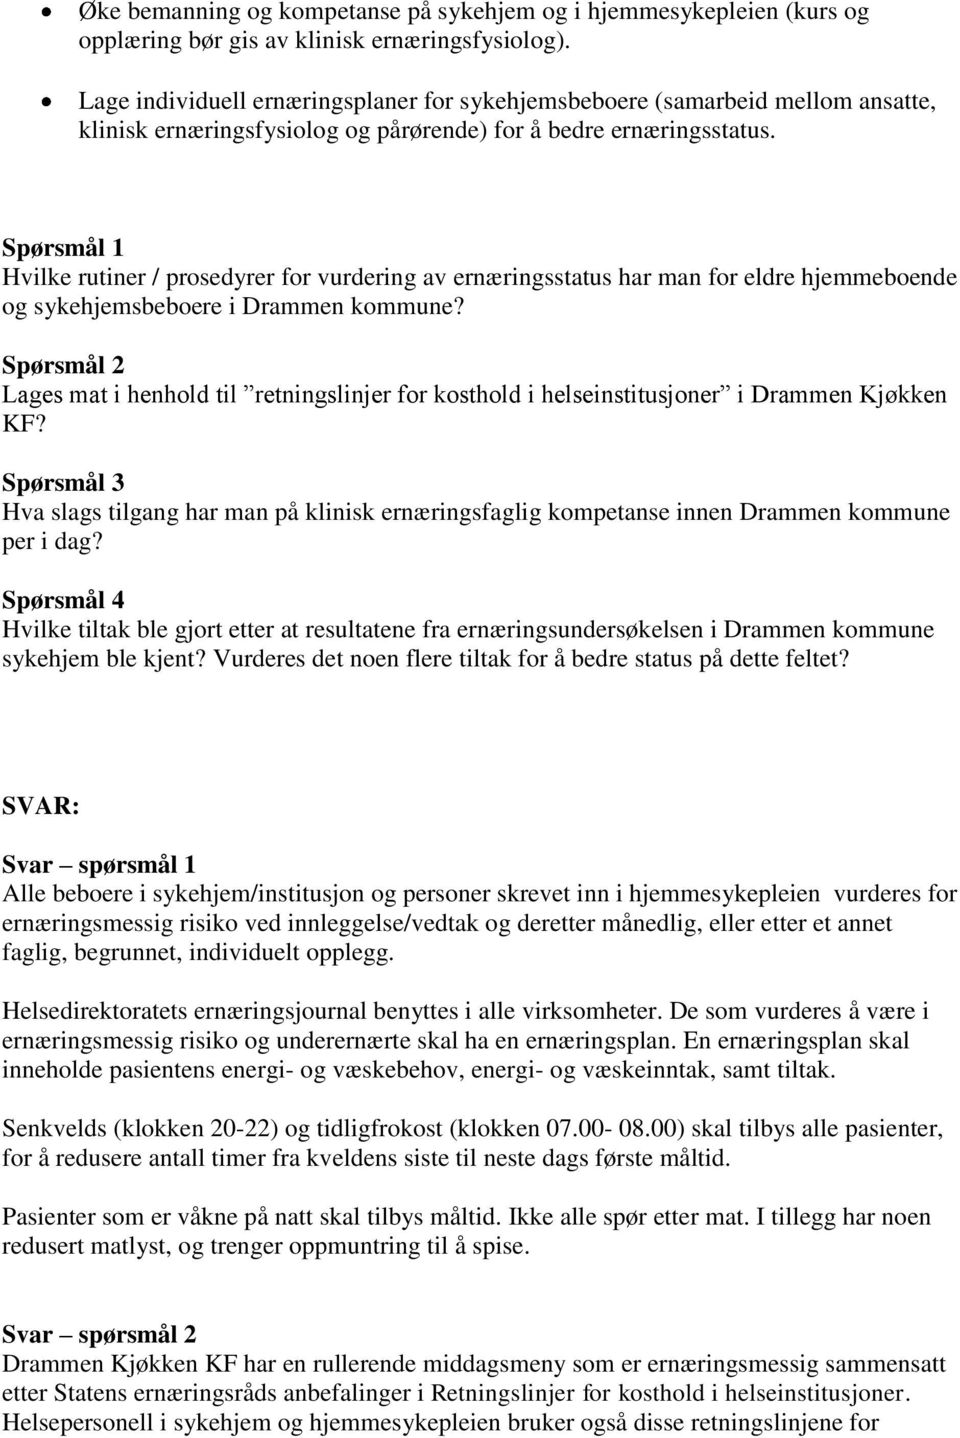 Spørsmål 1 Hvilke rutiner / prosedyrer for vurdering av ernæringsstatus har man for eldre hjemmeboende og sykehjemsbeboere i Drammen kommune?